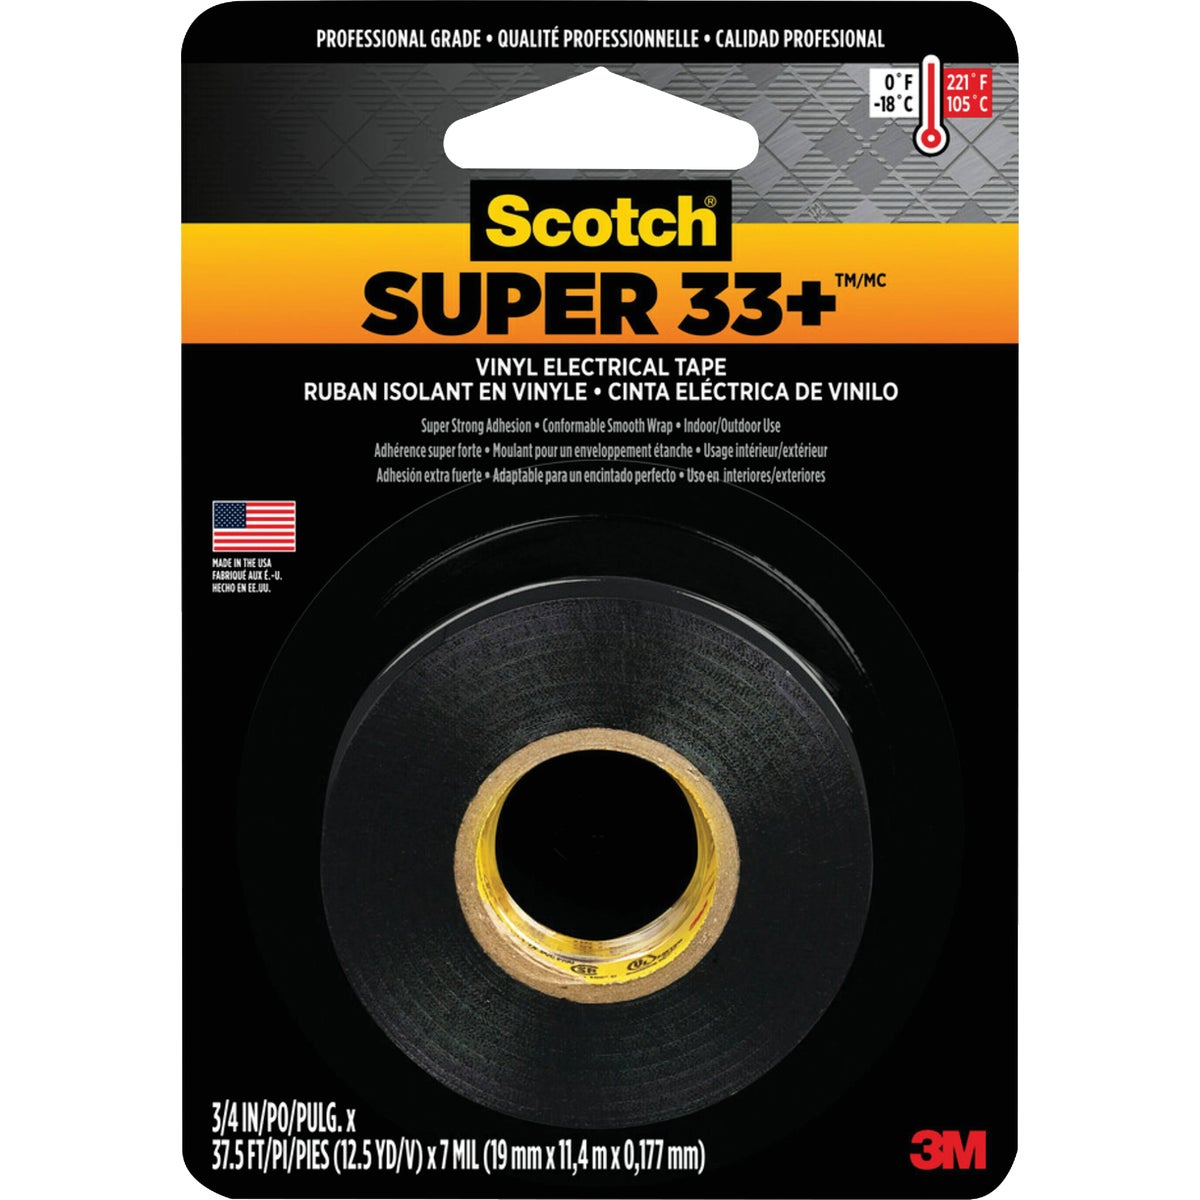 3M Scotch General Purpose 3/4 In. x 450 In. Electrical Tape